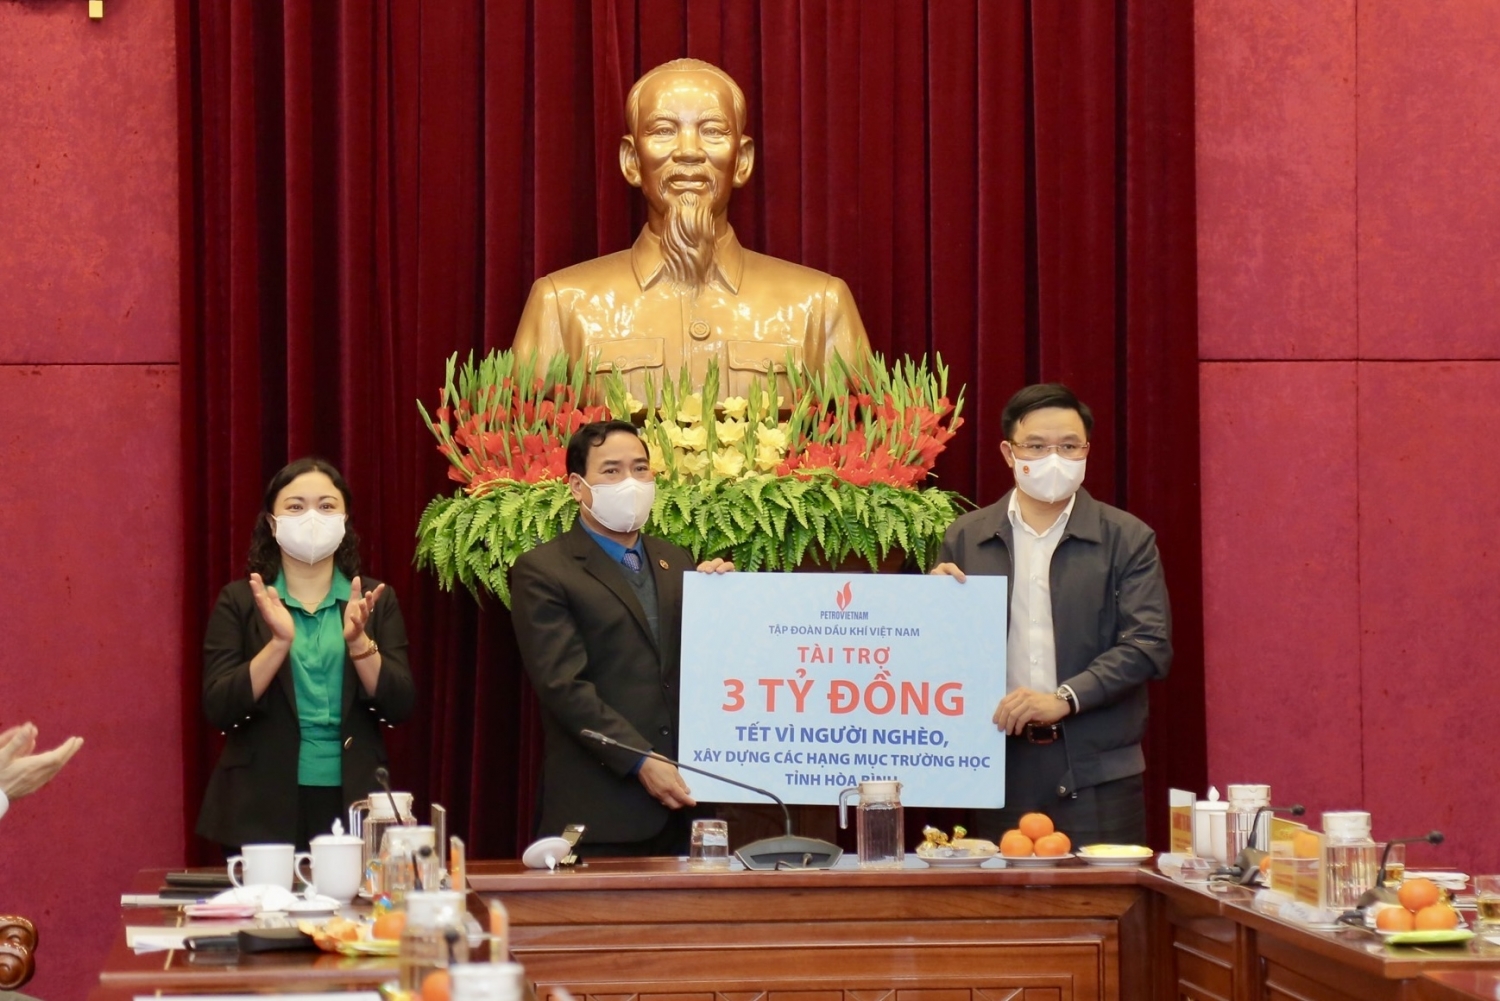 Tập đoàn Dầu khí Việt Nam trao tặng quà Tết cho đồng bào, nhân dân tỉnh Hoà Bình”